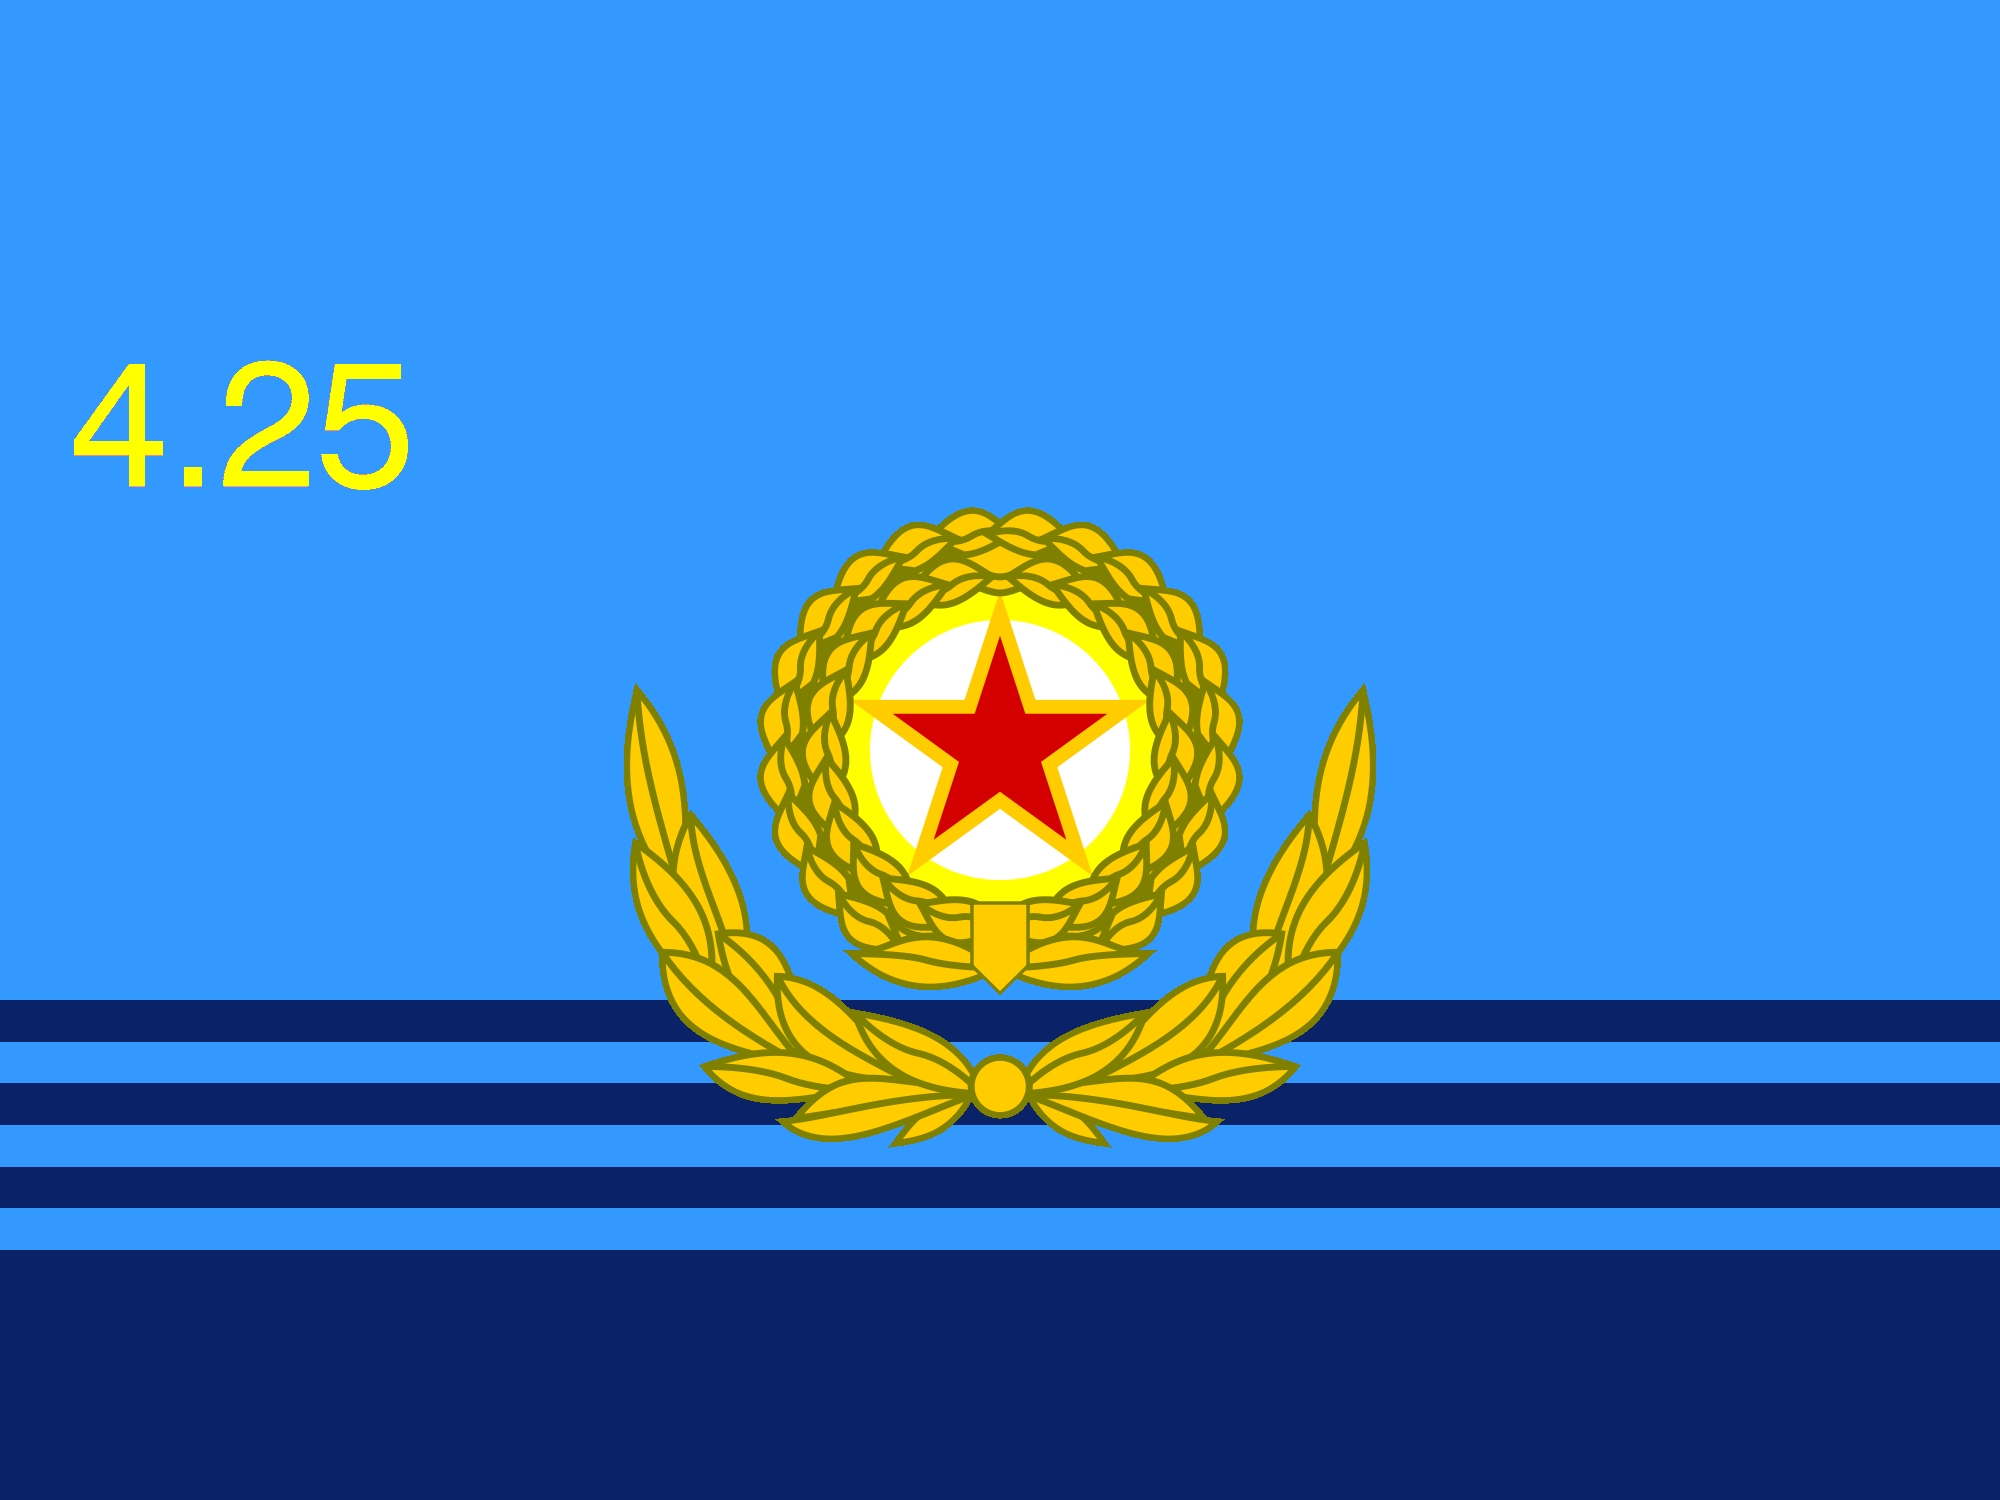 NKAF Flag.JPG